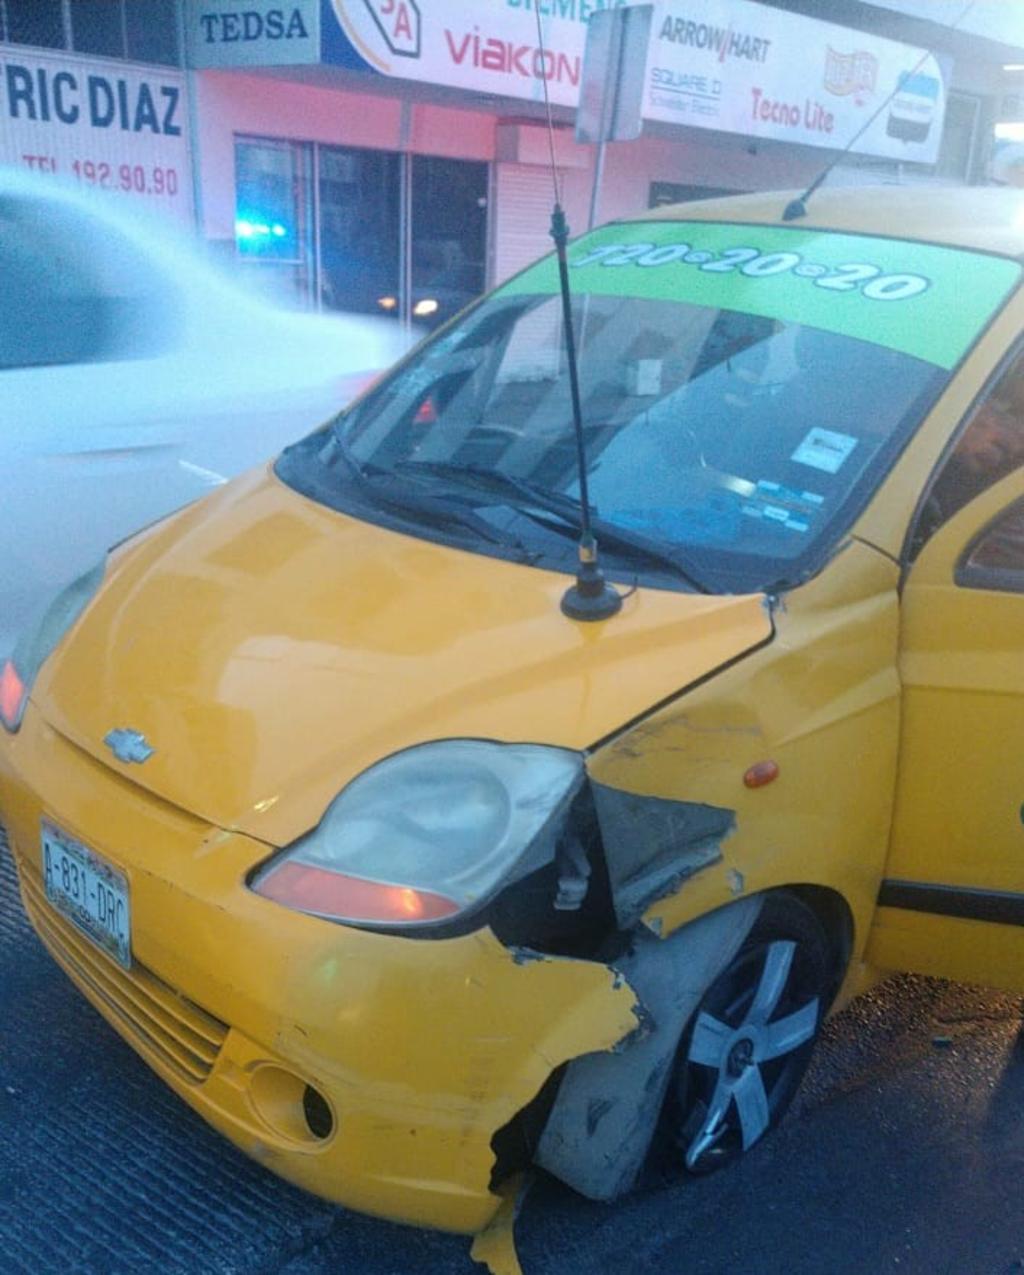 El accidente ocurrió alrededor de las 7 de la mañana del martes sobre el bulevar Revolución y calle Comonfort de la colonia Luis Echeverría Álvarez de Torreón. (EL SIGLO DE TORREÓN)